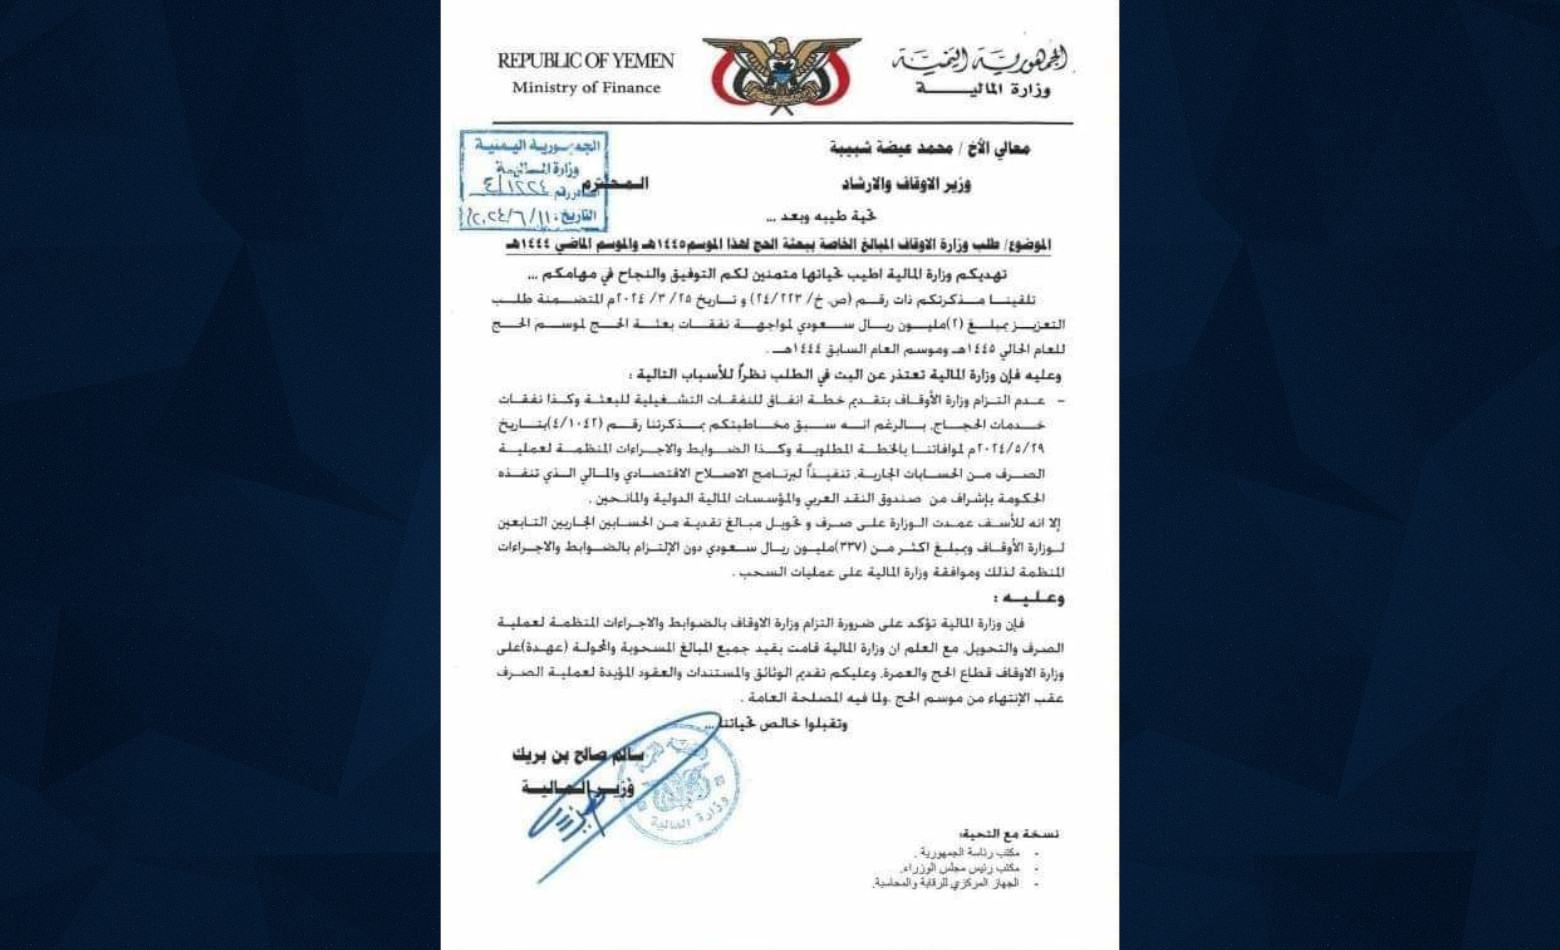 وزارة المالية اليمنية تتهم “الأوقاف” بصرف 327 مليون ريال سعودي بطريقة غير قانونية